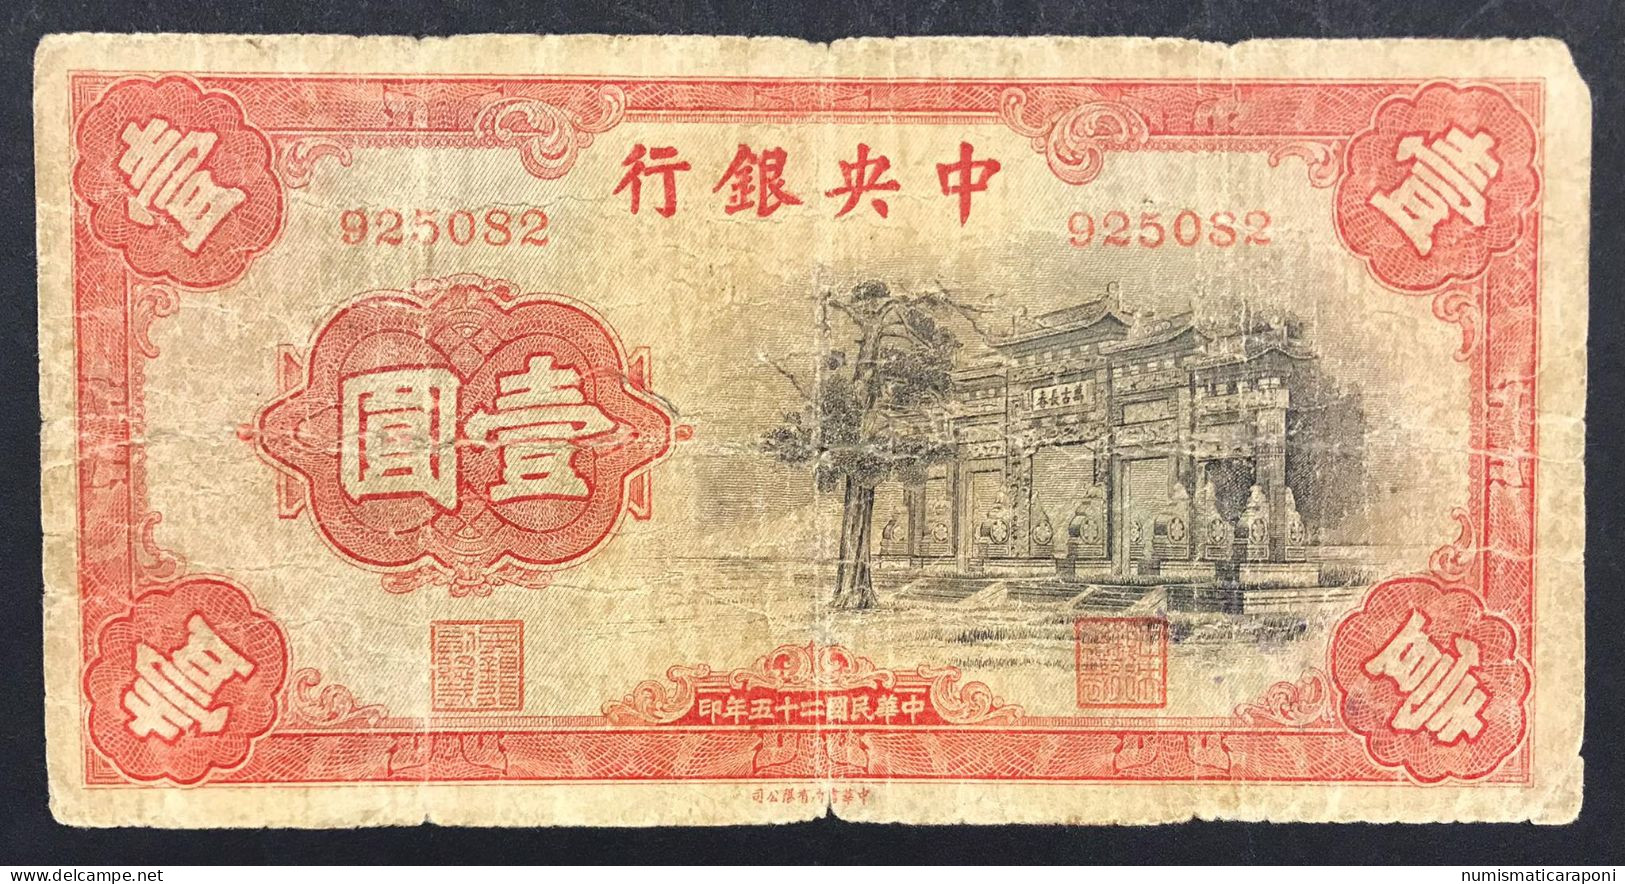 Cina China The Central Bank Of China 1 Yuan 1936 Pick#210 Lotto 272 - Chine